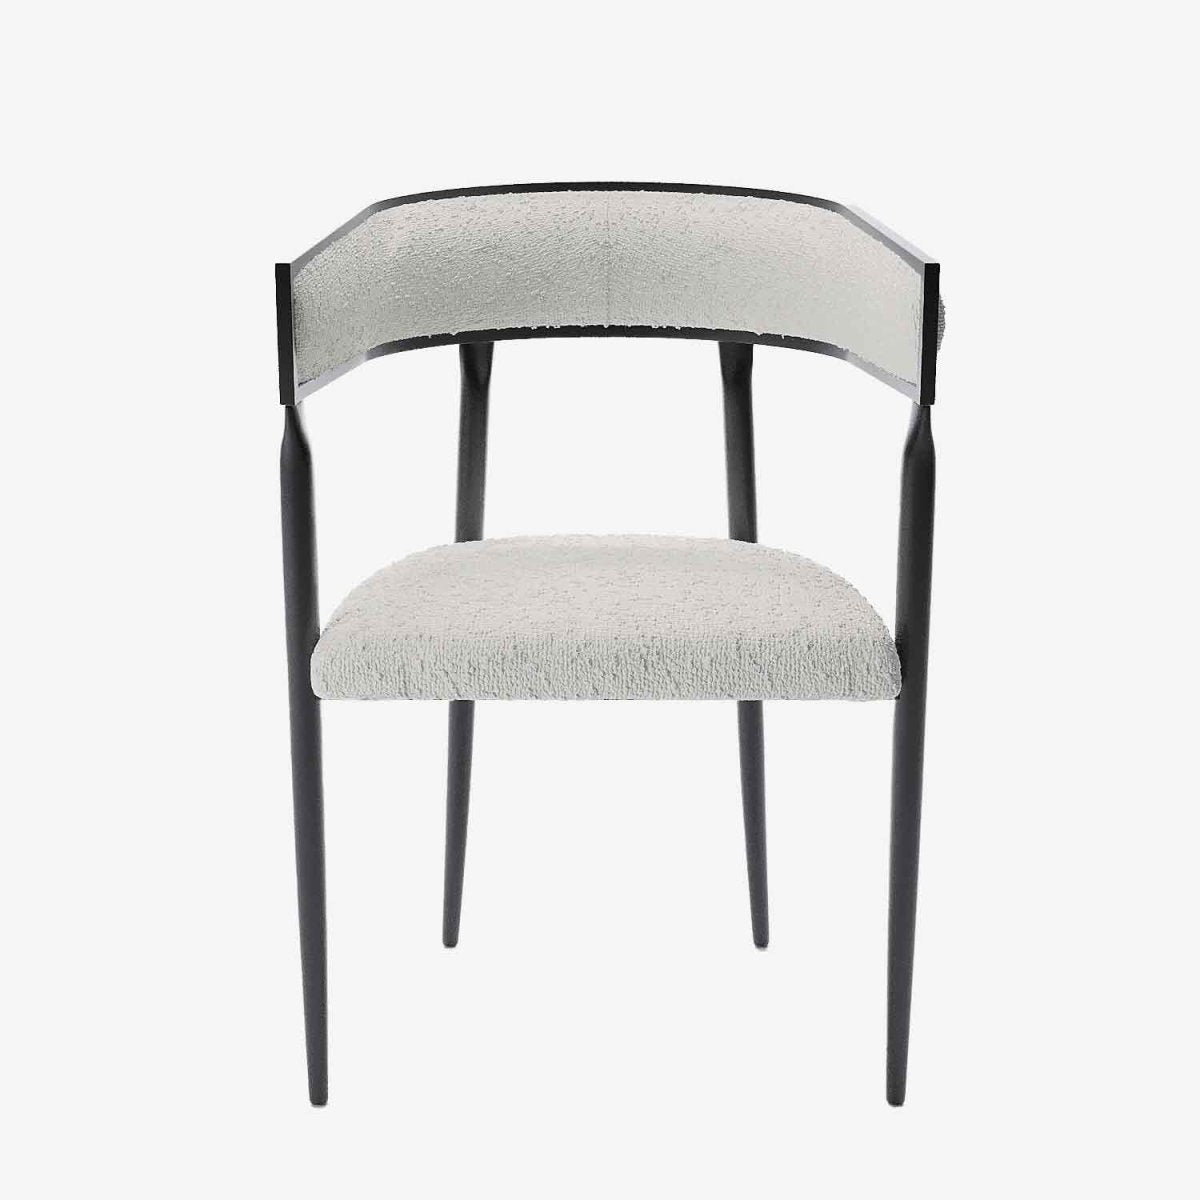 Chaise scandinave pour salle à manger moderne, bouclette gris crème - Potiron Paris, la satisfaction des chaises de table design confortables au meilleur prix